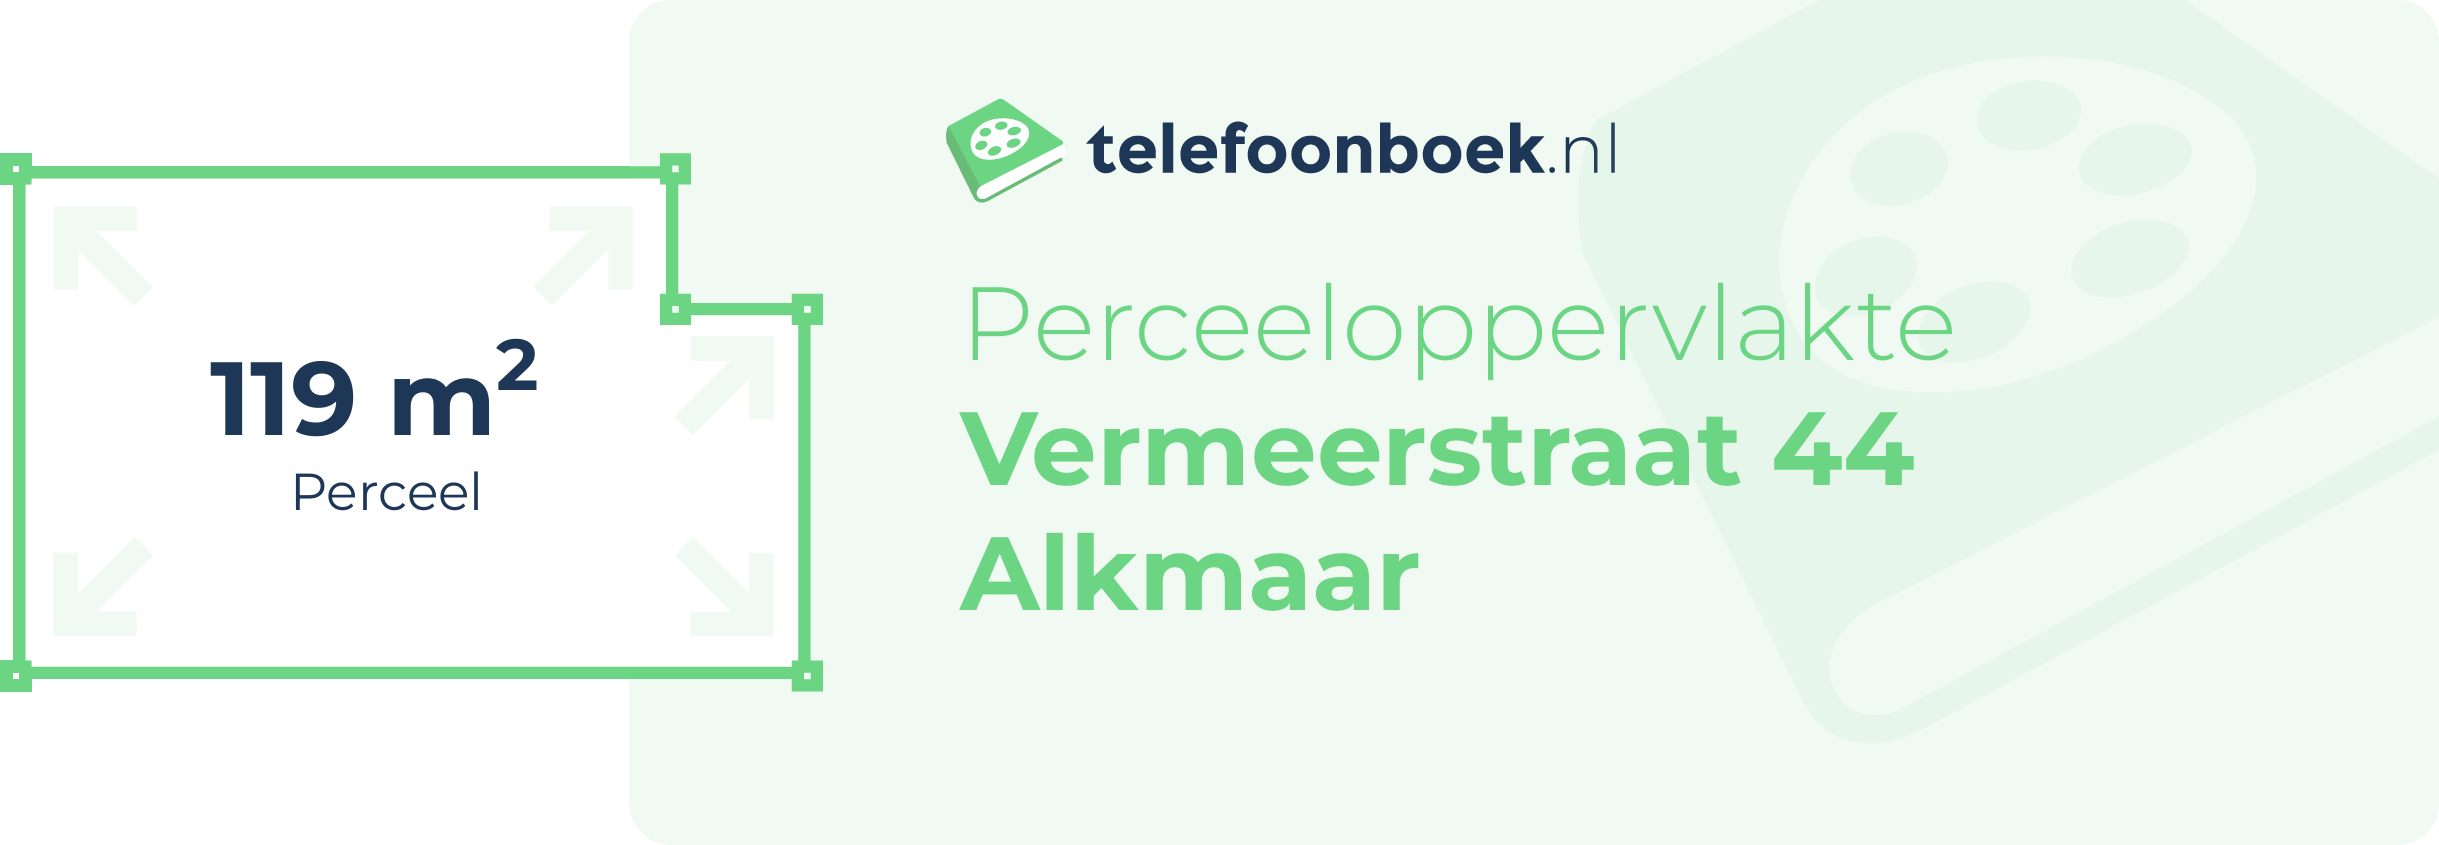 Perceeloppervlakte Vermeerstraat 44 Alkmaar